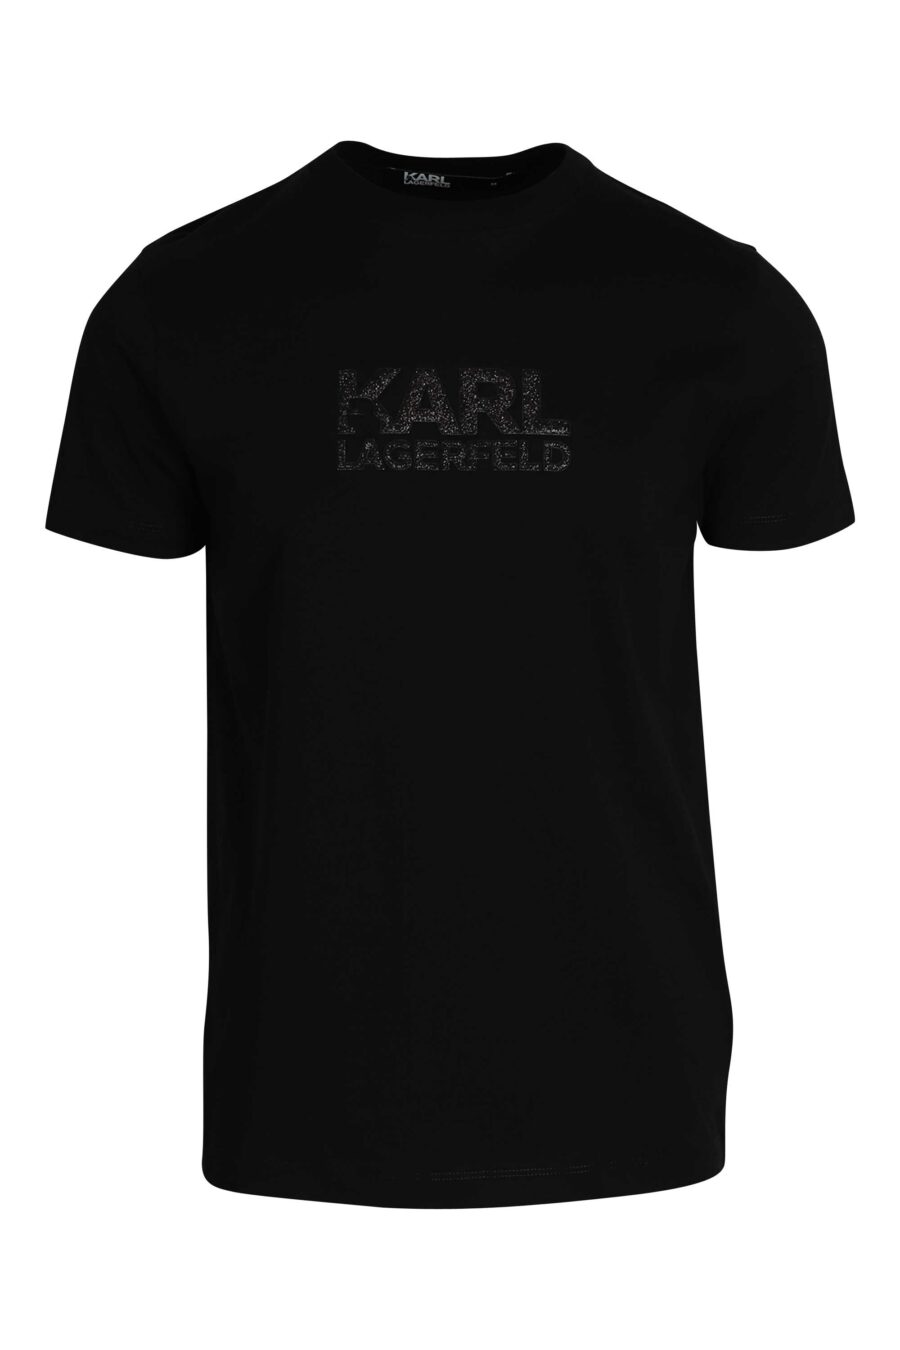 T-shirt preta com maxilogue preto brilhante - 014543001